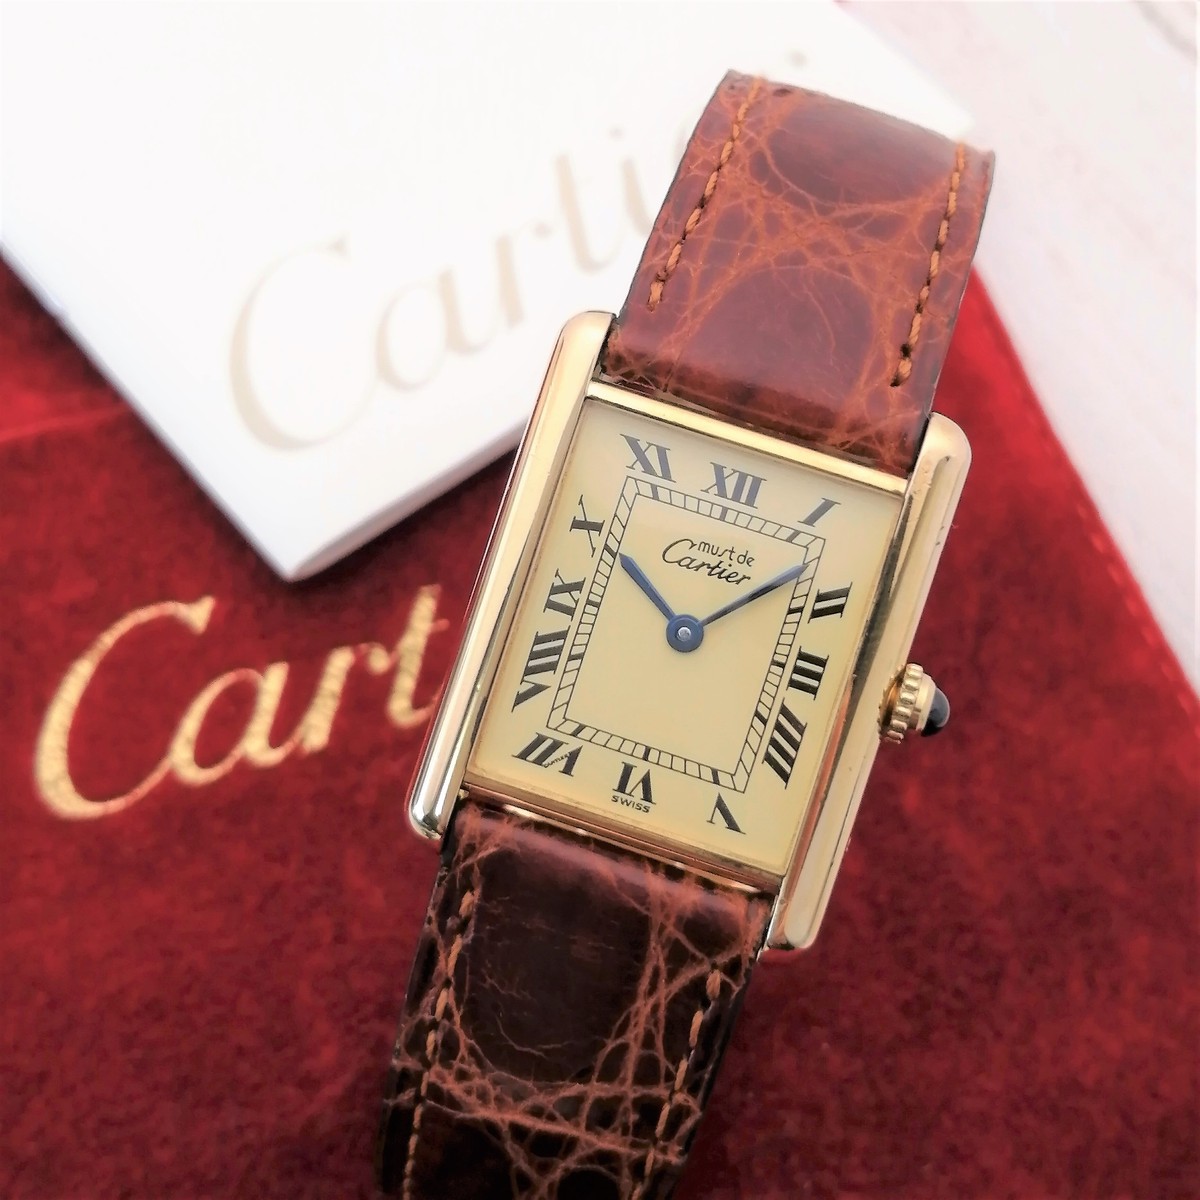 Cartierの空箱(腕時計) - 時計